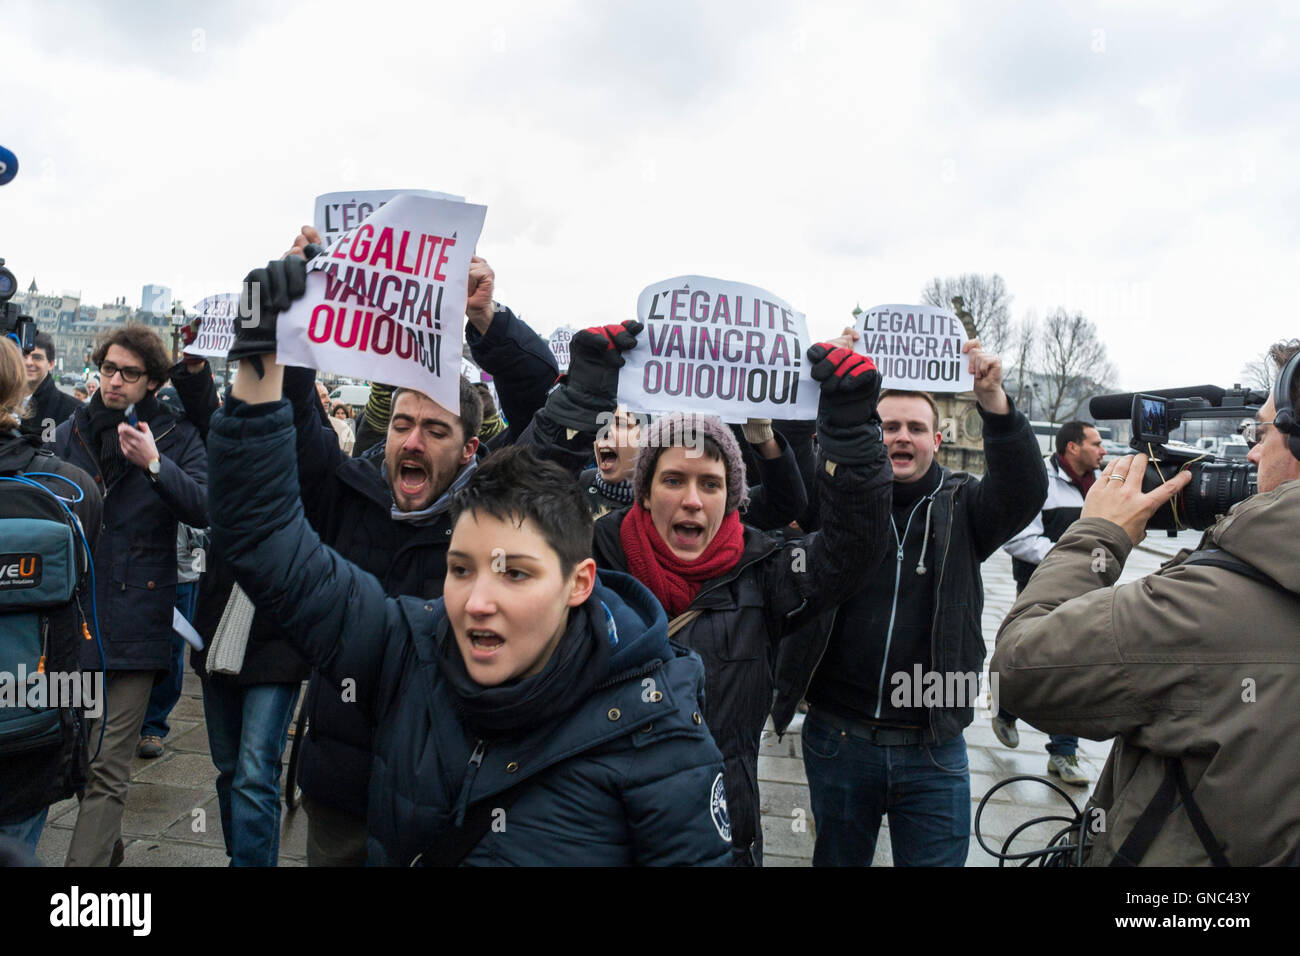 Paris, Frankreich, Menschenmenge, französische LGBTQ-Aktivisten, protestierende Politiker gegen die Homosexuelle Ehe, Eheschließungs-Demonstration außerhalb der Haft Aktivisten-Protestschilder auf der Straße, protestierende Eheschließung, Antidiskriminierung, Homophobie, lgbtq-Demonstranten mit Plakat Stockfoto